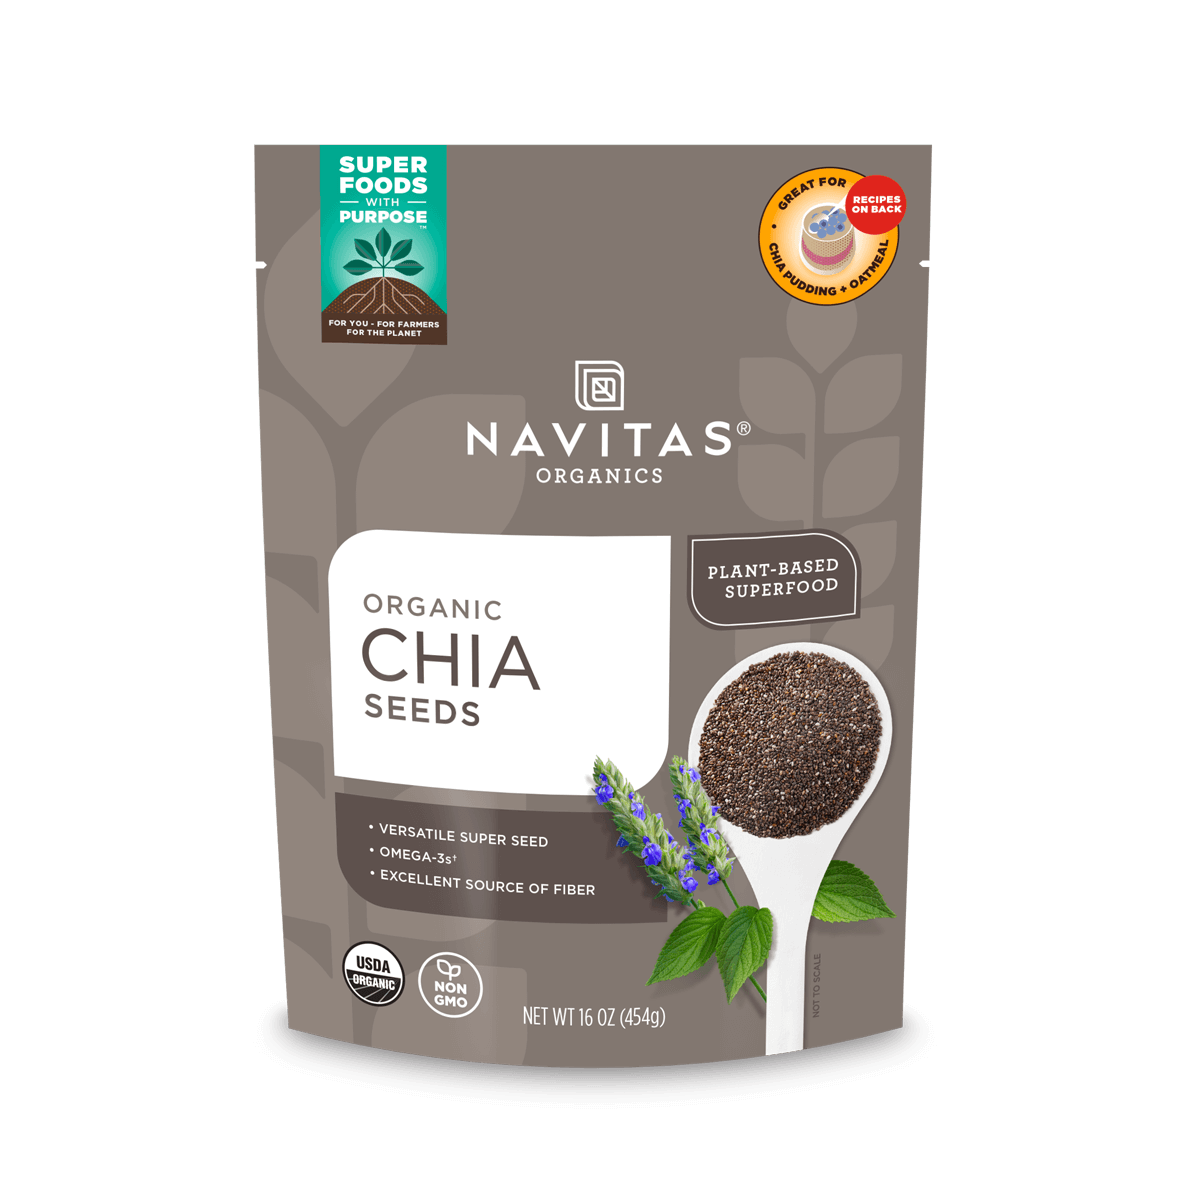 Navitas Organics Chia Seeds 16 oz. back of bag